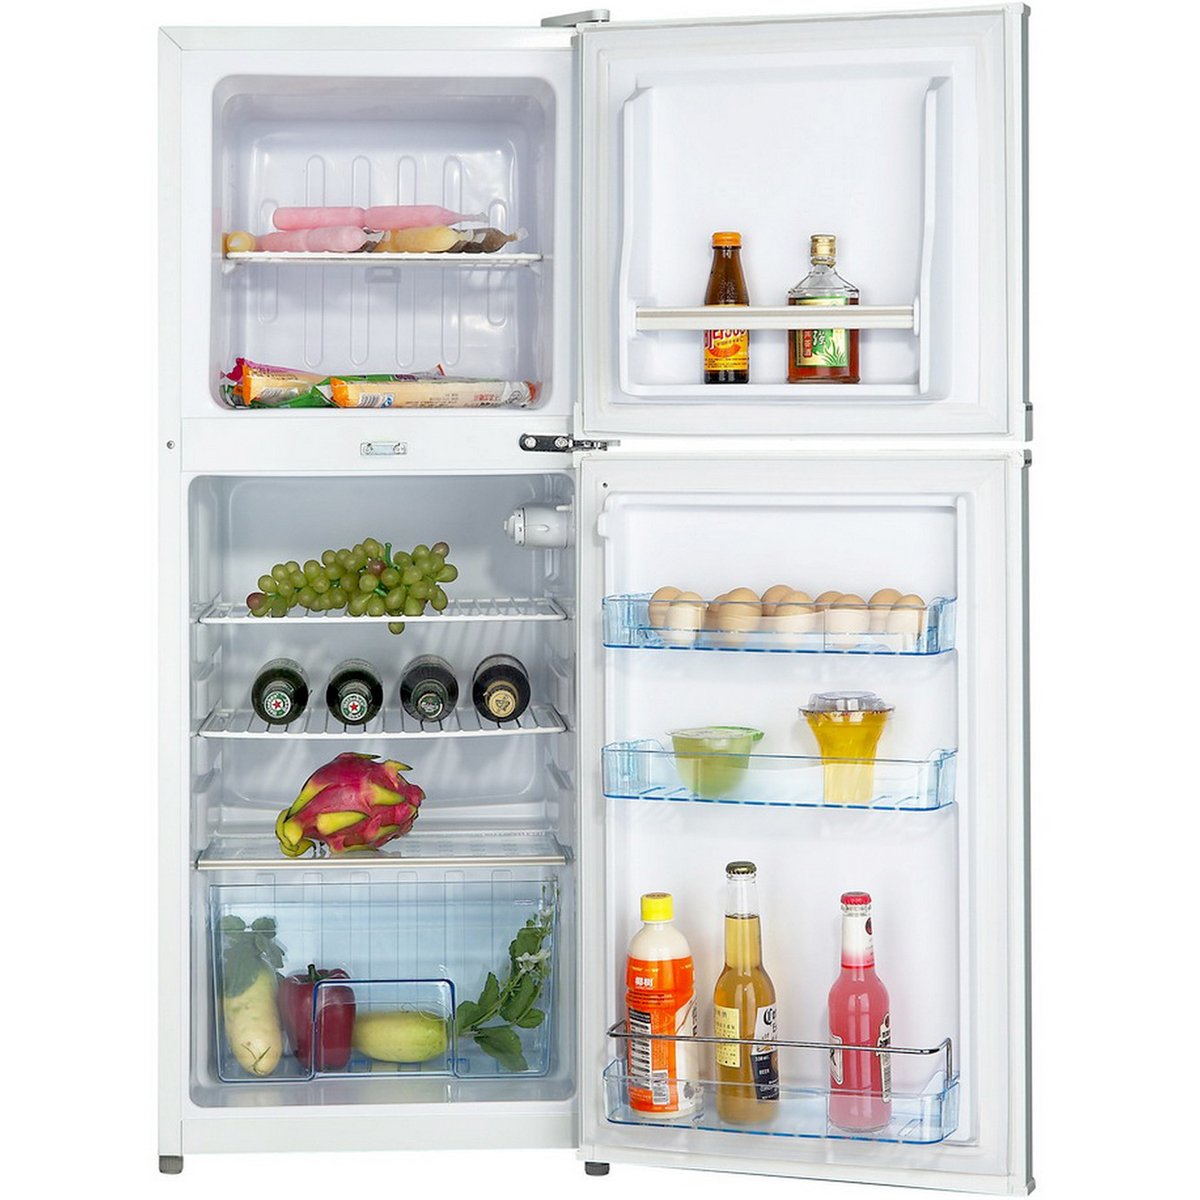 Elekta Double Door Refrigerator EFR-175(S)MKI 137Ltr